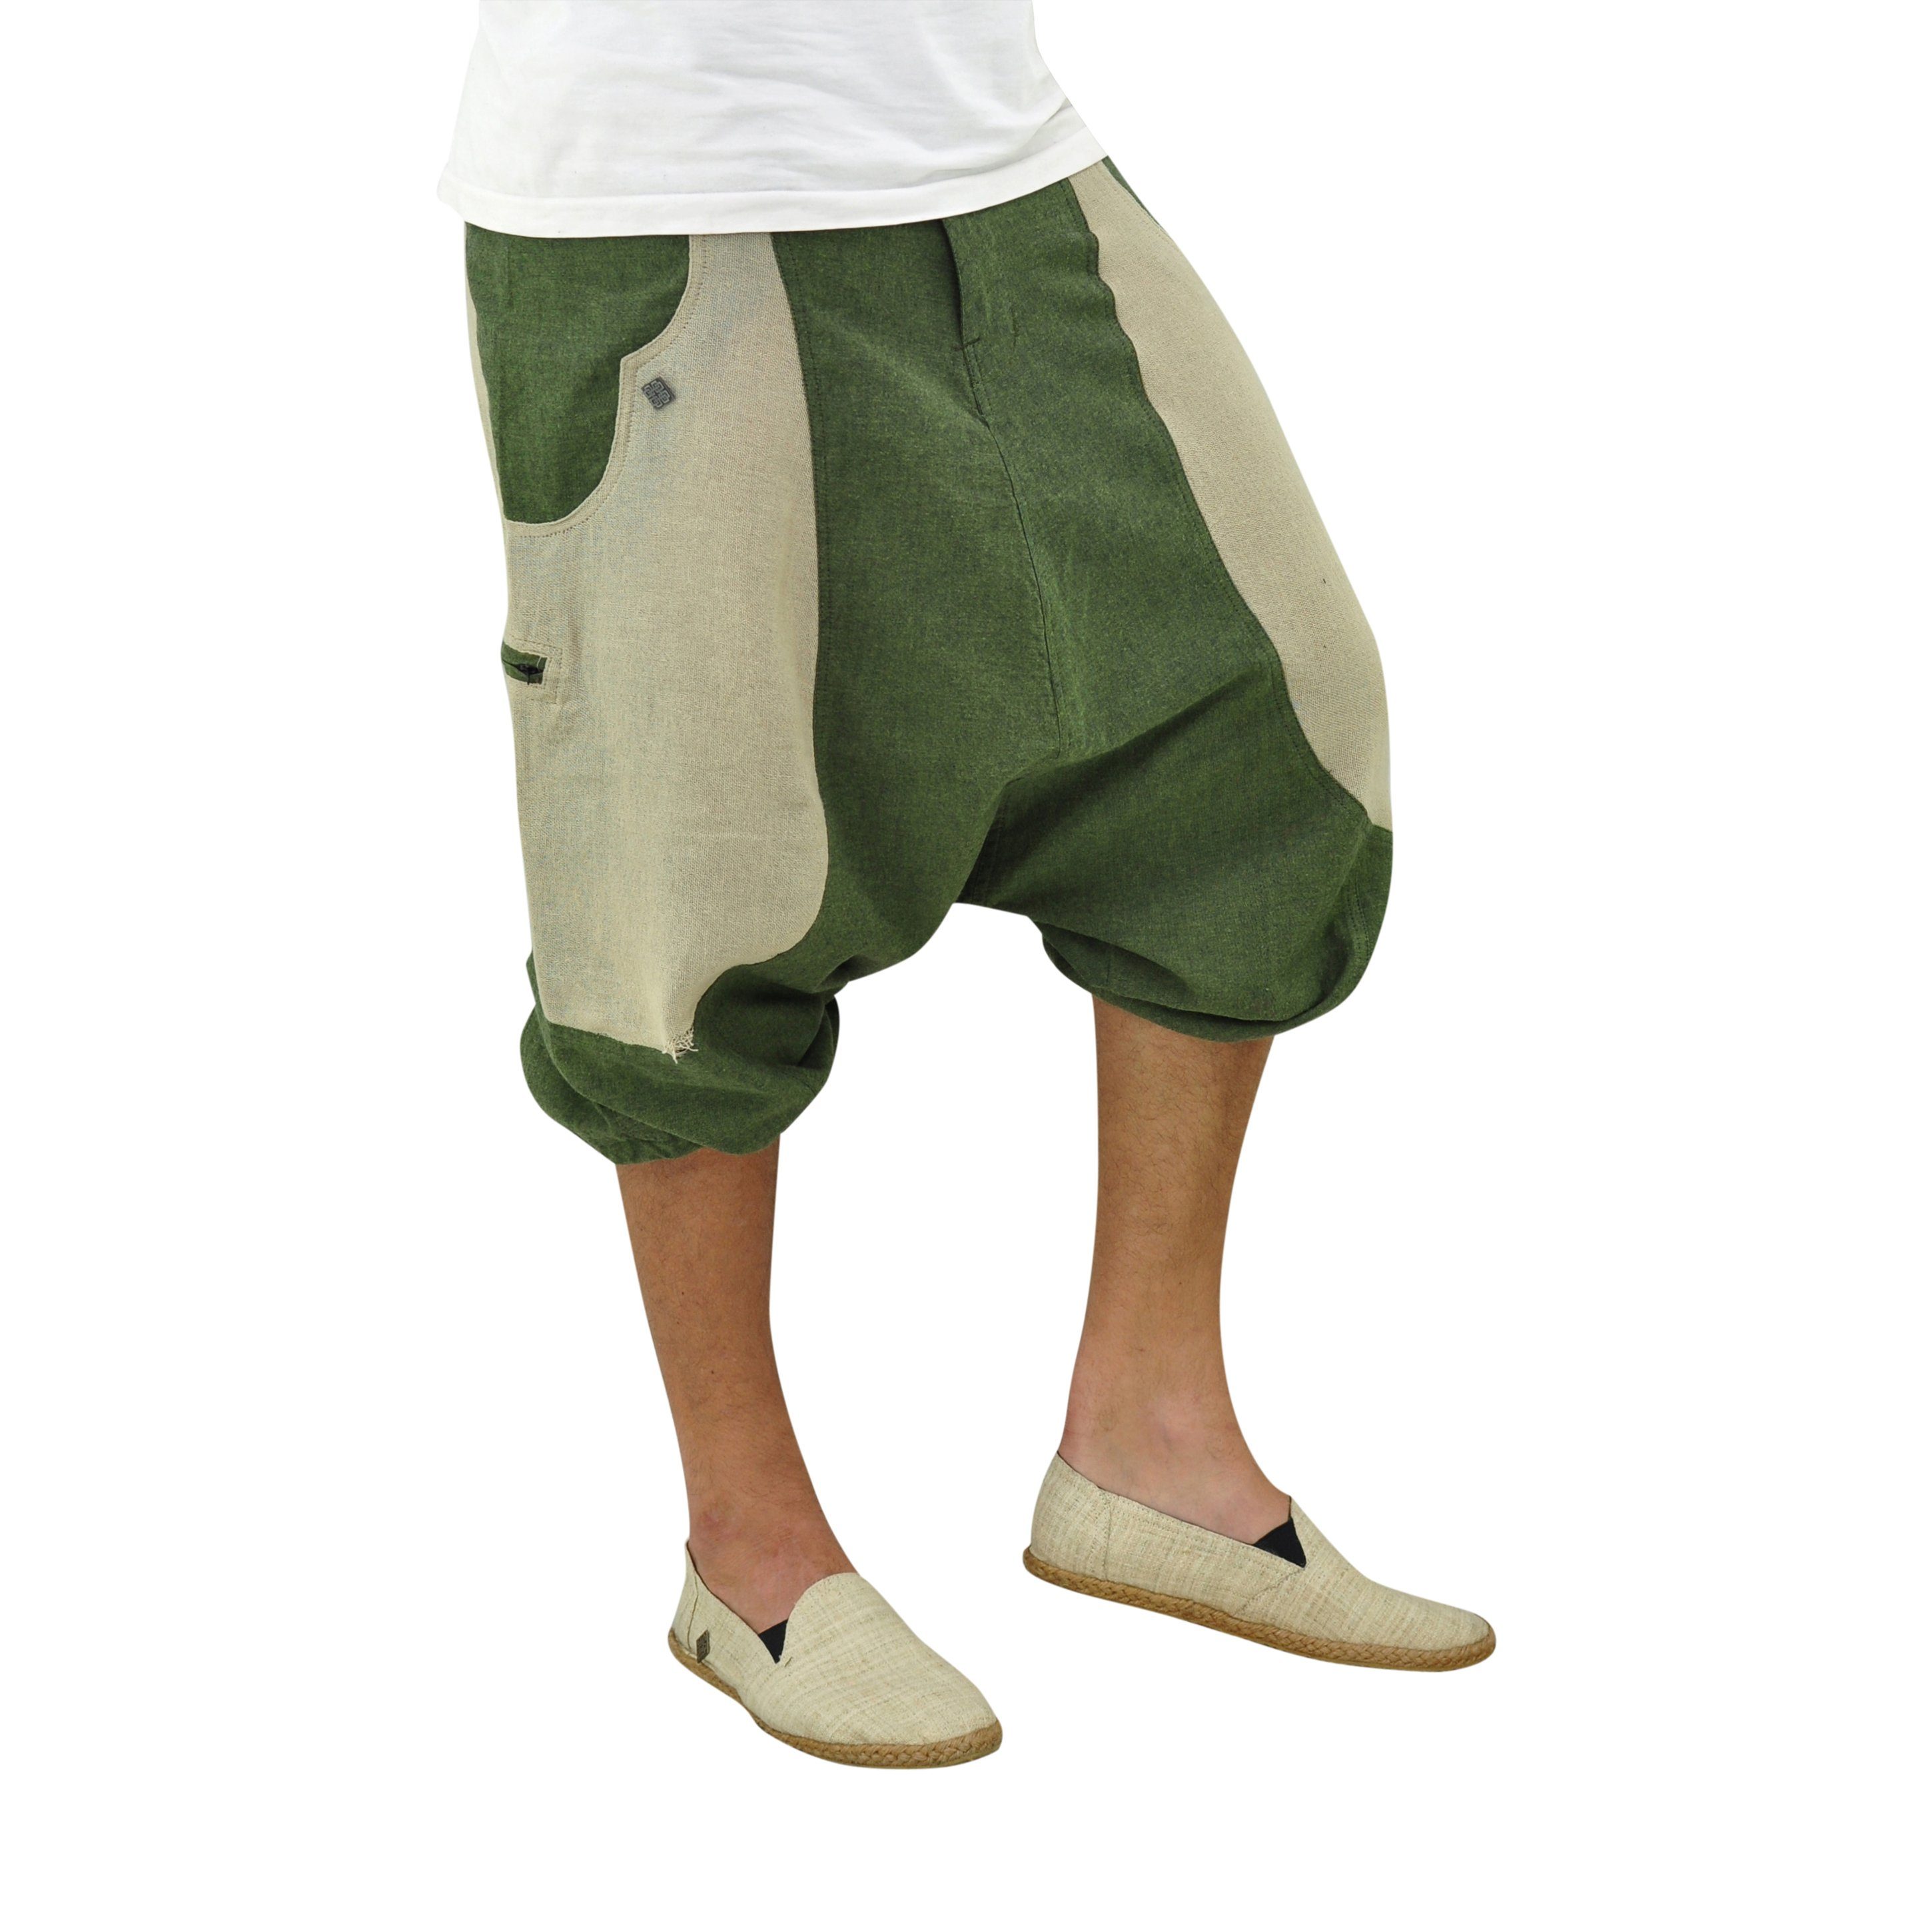 Shorts kurz Farbblock-Design, Goa Hose Damen, fallender Unisex, Herren 2 & virblatt kurze Schritt, Haremshose Reißverschlusstaschen mitteltief Haremshose grün